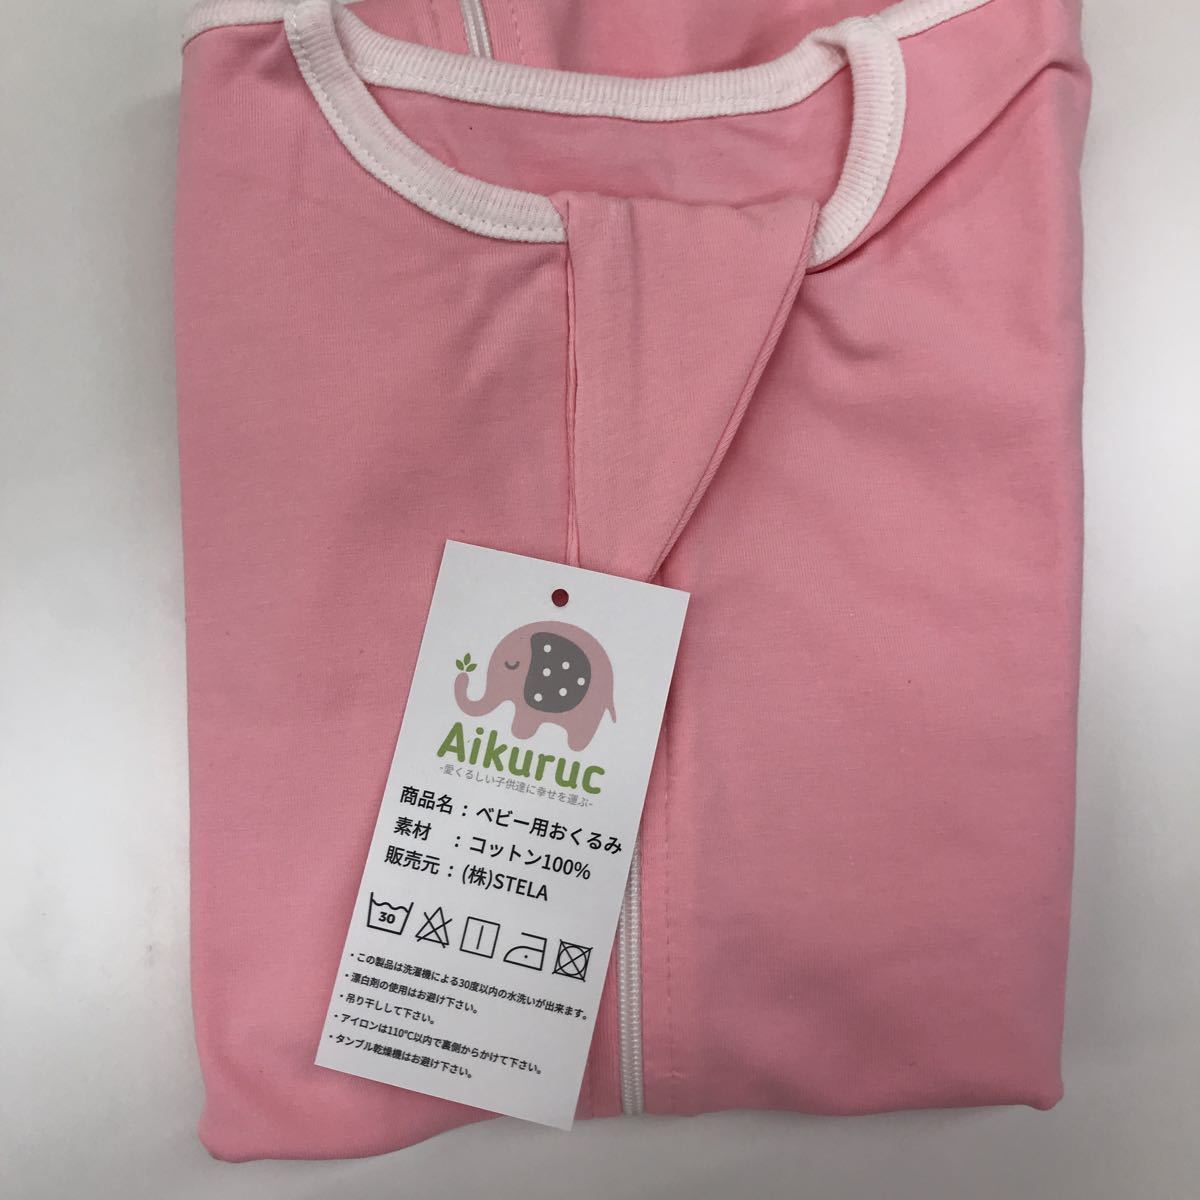 [. производство ...]Aikurucswa доллар одеяло чудесный одеяло ночь плач . меры хлопок 100% новорожденный (6~8.5kg)(M размер, розовый )